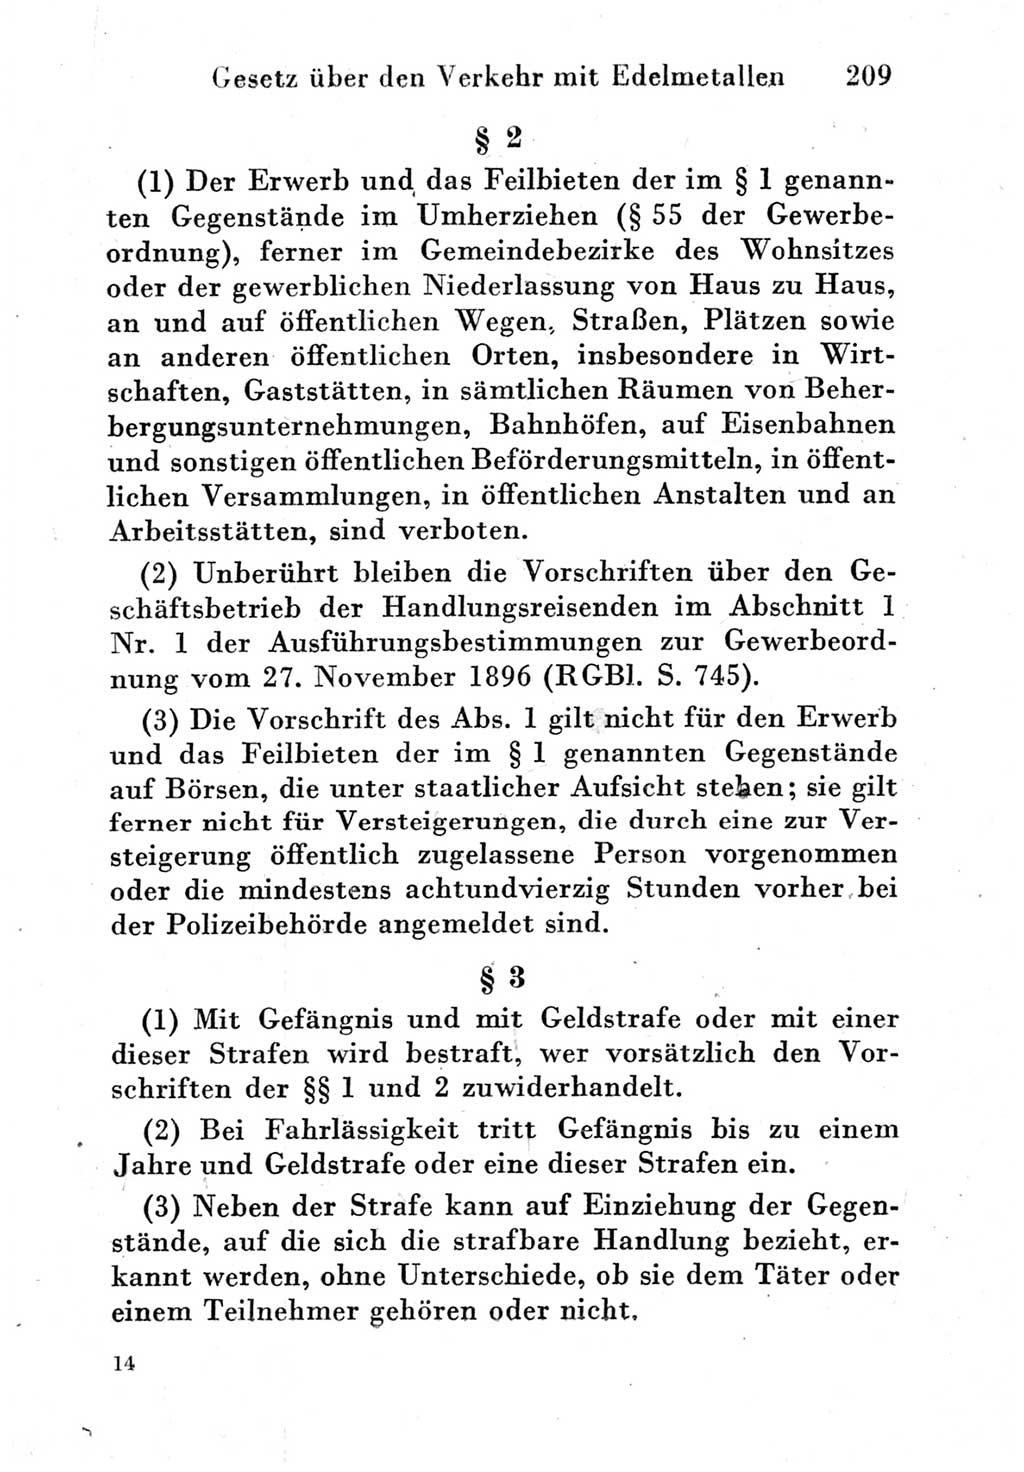 Strafgesetzbuch (StGB) und andere Strafgesetze [Deutsche Demokratische Republik (DDR)] 1951, Seite 209 (StGB Strafges. DDR 1951, S. 209)